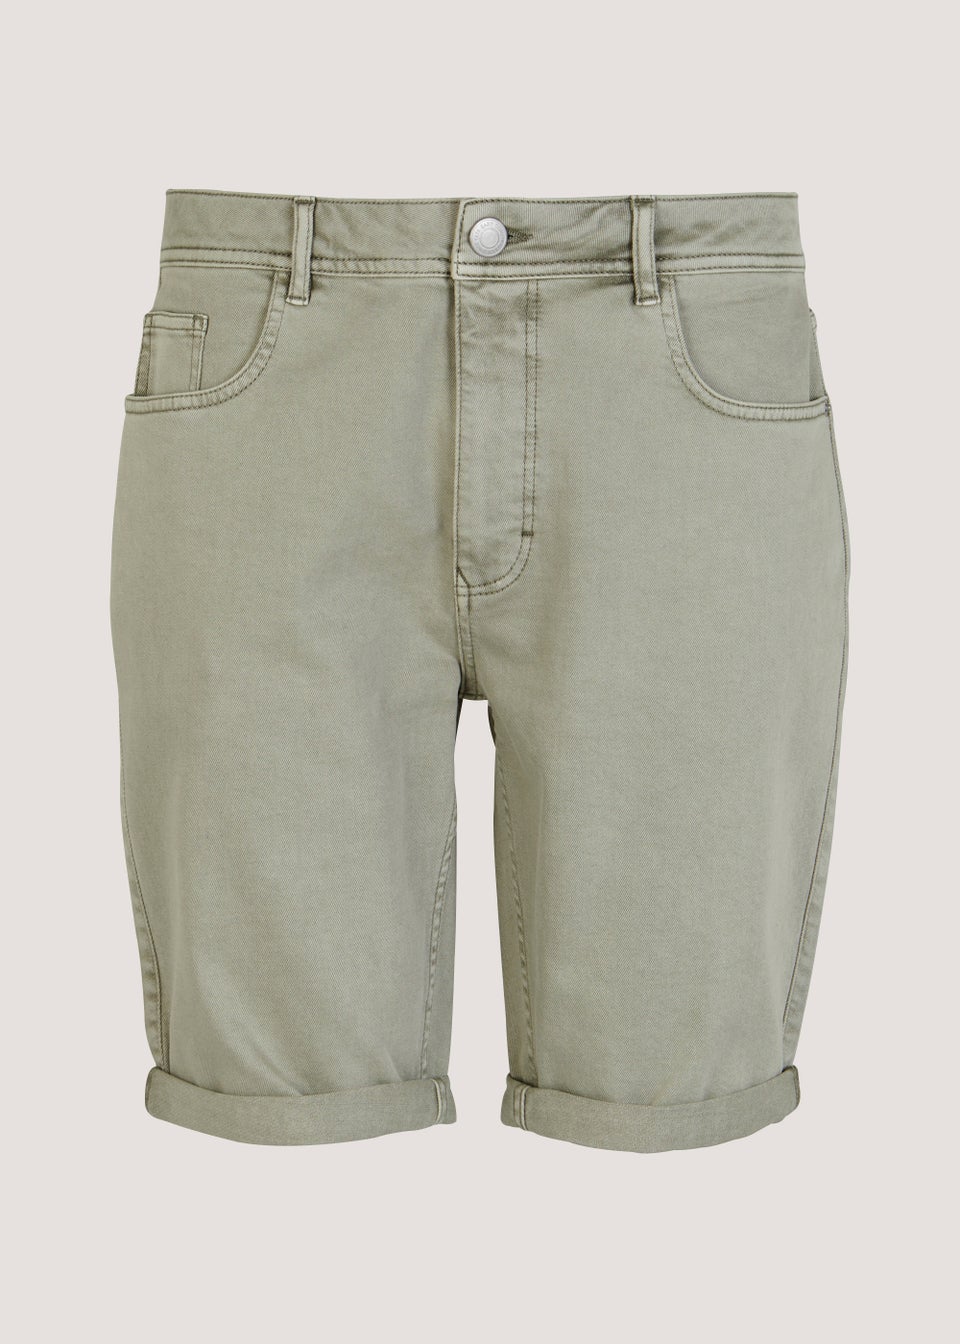 5 Pocket Khaki Shorts - Matalan